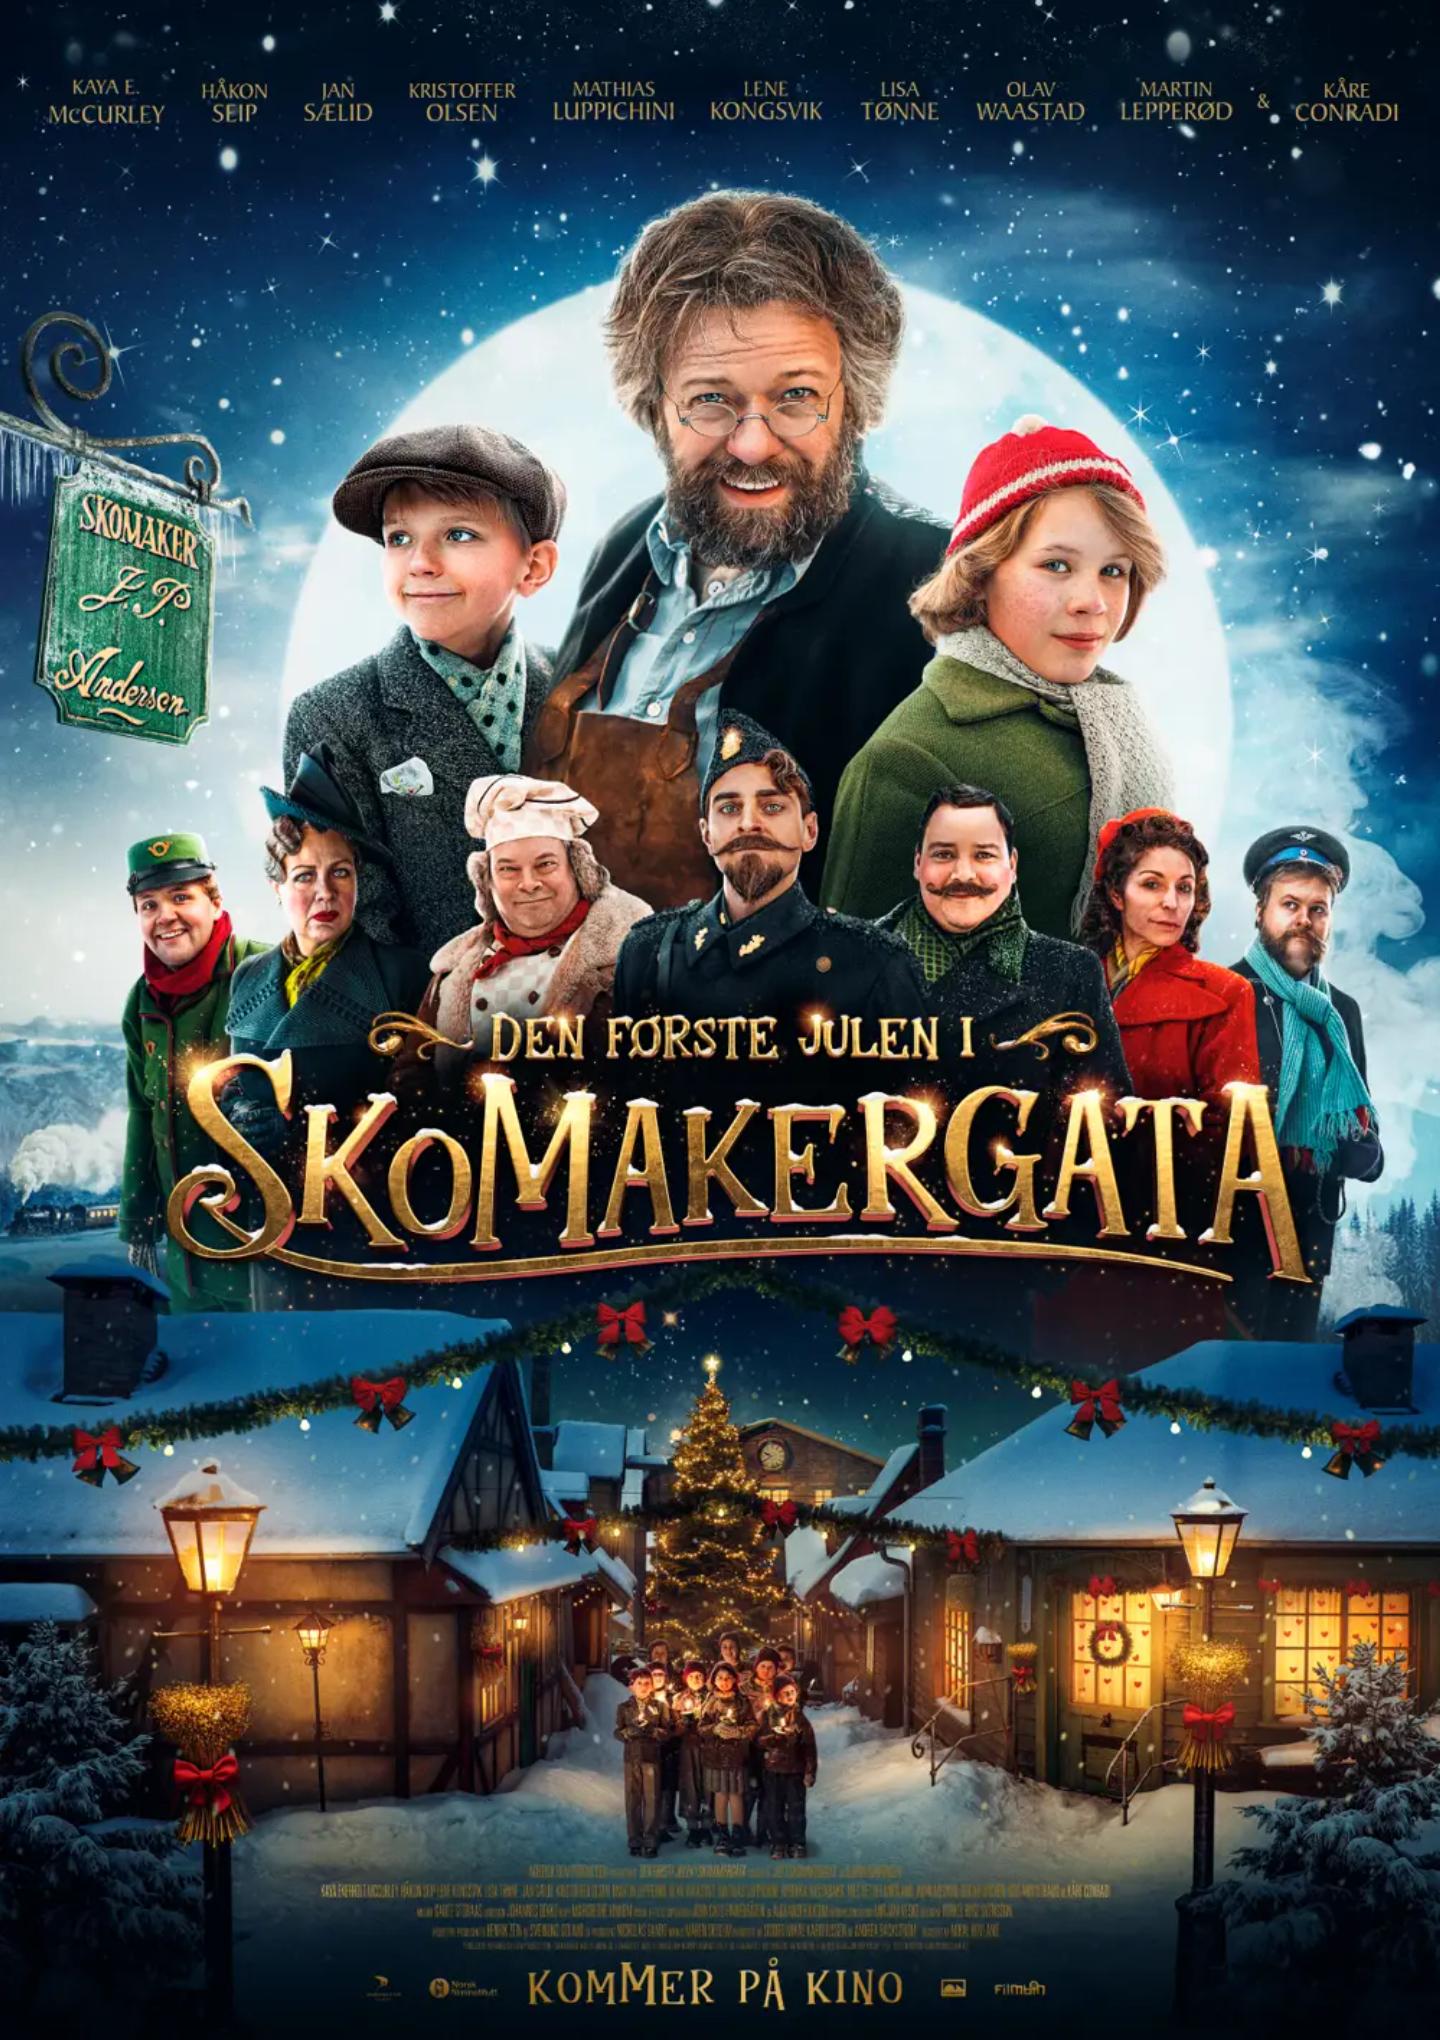 Plakat for 'Den første julen i Skomakergata'